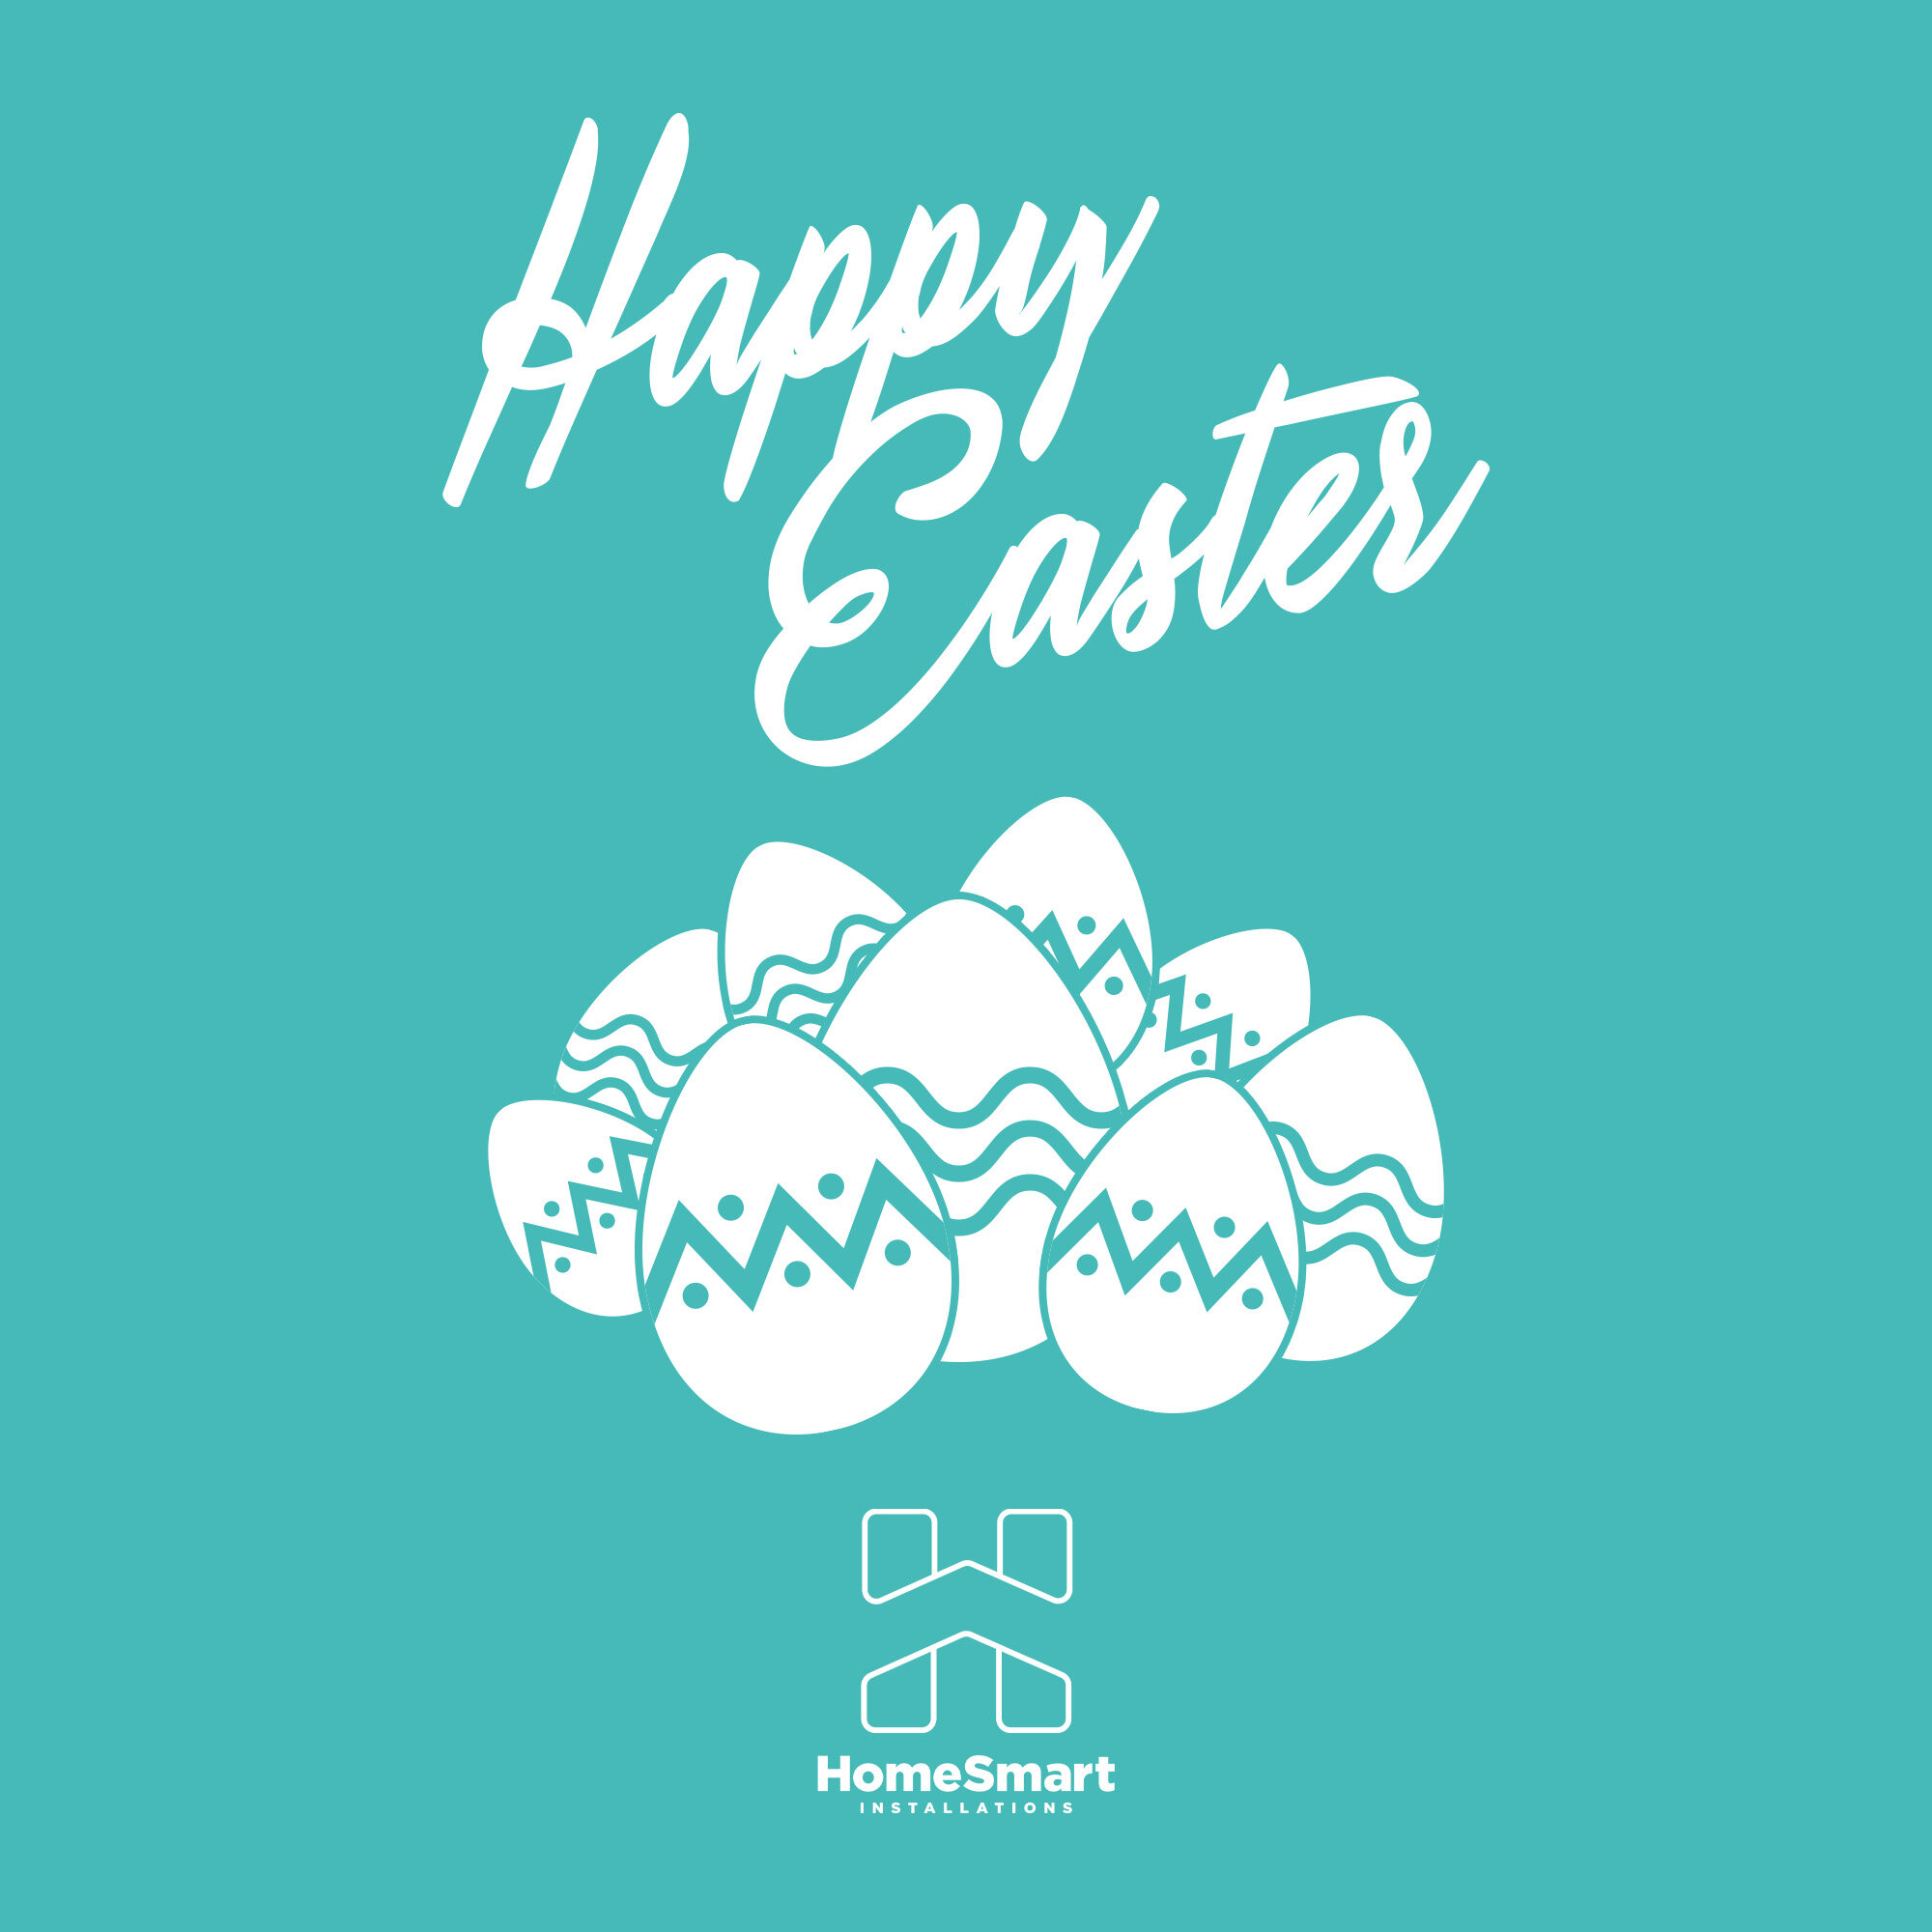 🐰 Happy Easter from everyone at HomeSmart 🐣

#home #homedecor #homeinspo #homeowners #homedesign #rennovate #rennovation #RennovationTips #rennovationproject #windows #bifold #bifolds #bifolddoor #Bifolddoors #fascias #frontdoor #frontdoorgoals #fr